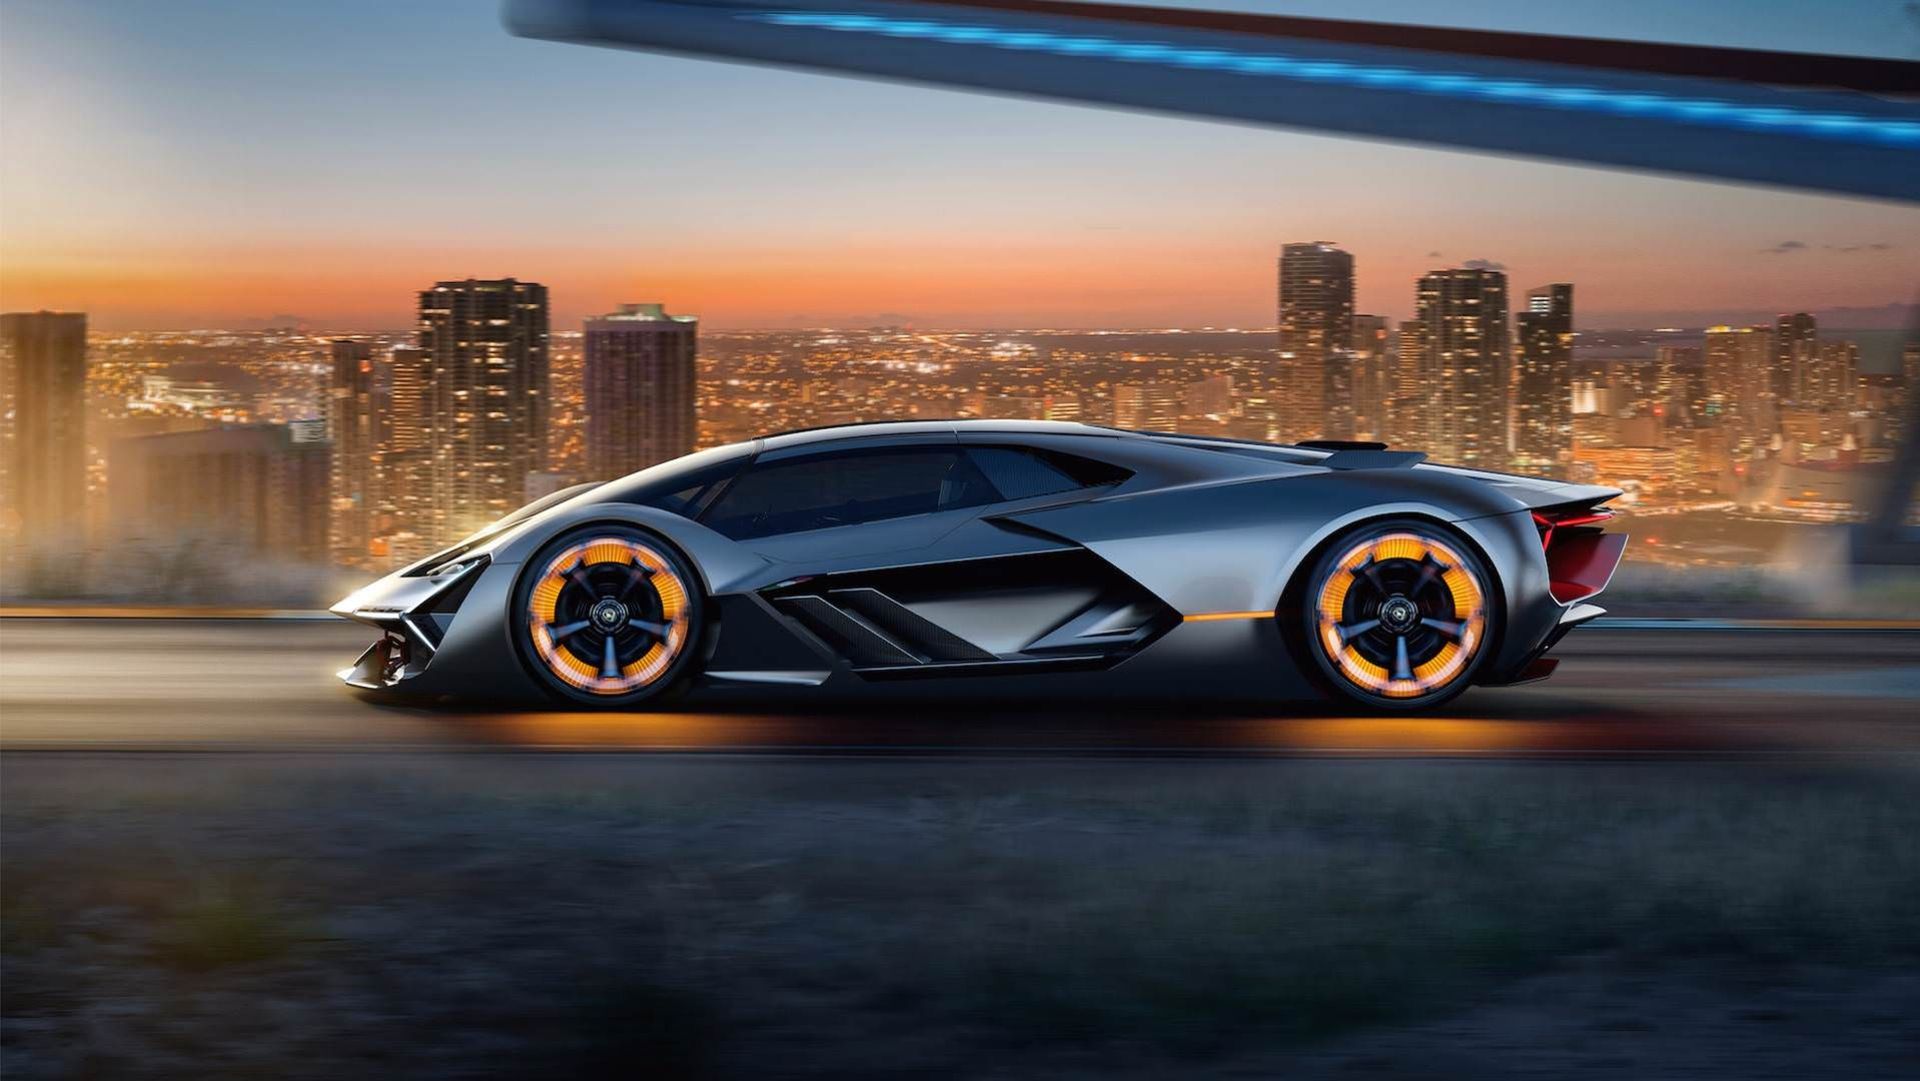 مرجع متخصصين ايران Lamborghini Terzo Millennio Concept / مفهومي لامبورگيني ترزو ميلنيو